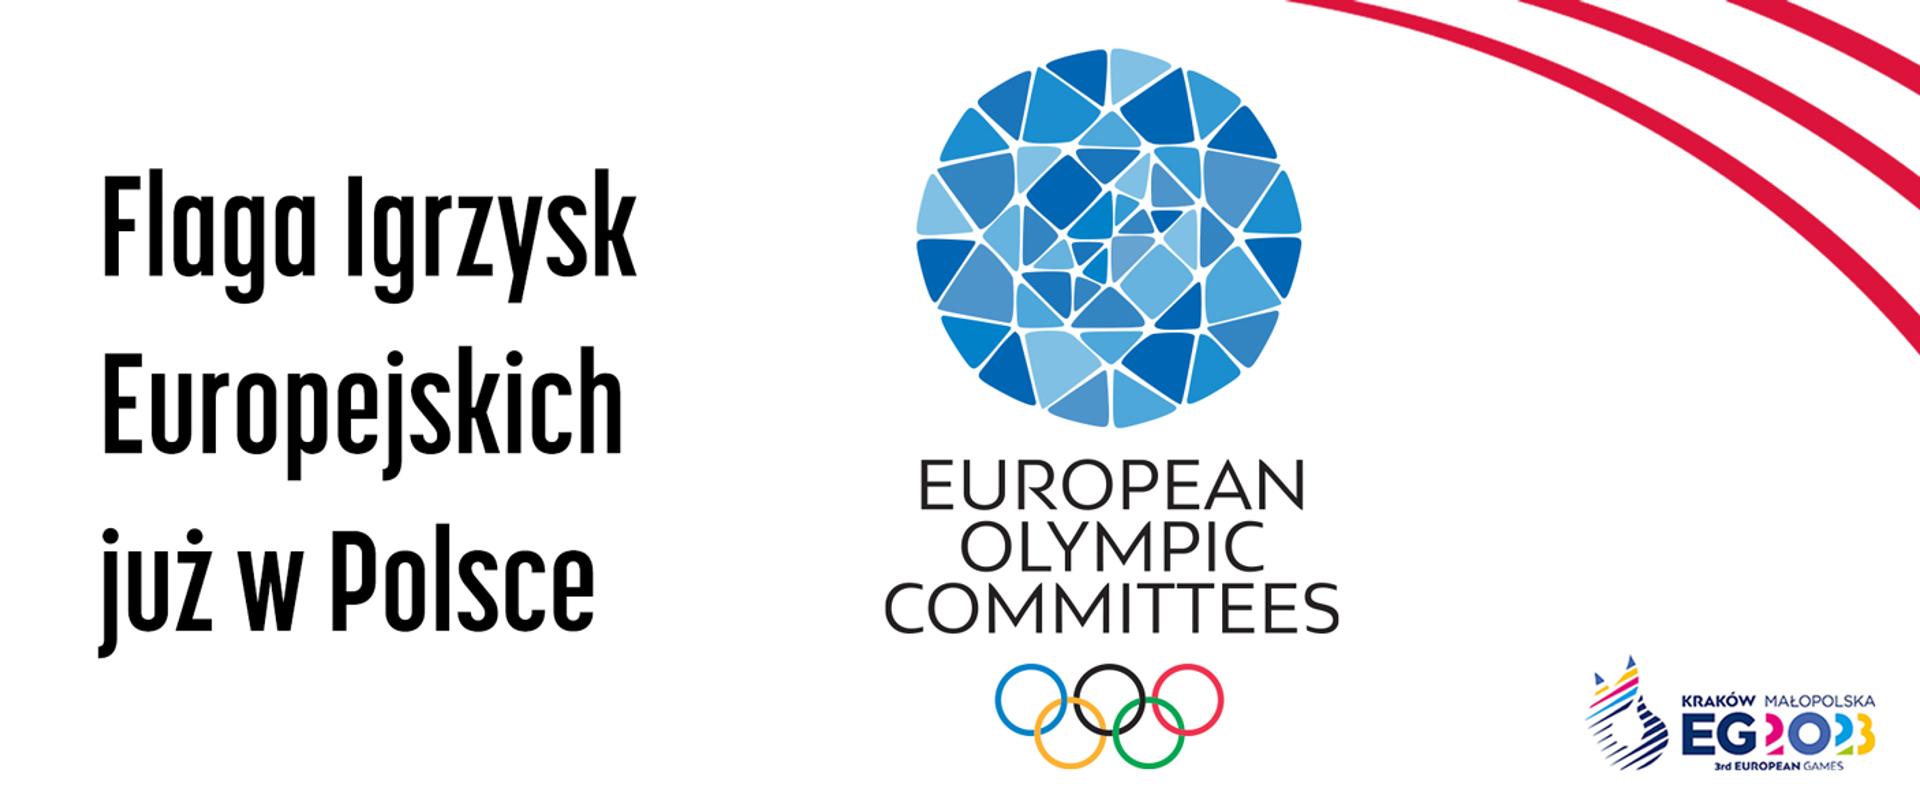 Flaga Igrzysk Europejskich już w Polsce - plansza z logotypem Stowarzyszenia Europejskich Komitetów Olimpijskich i logotypem 3. IE